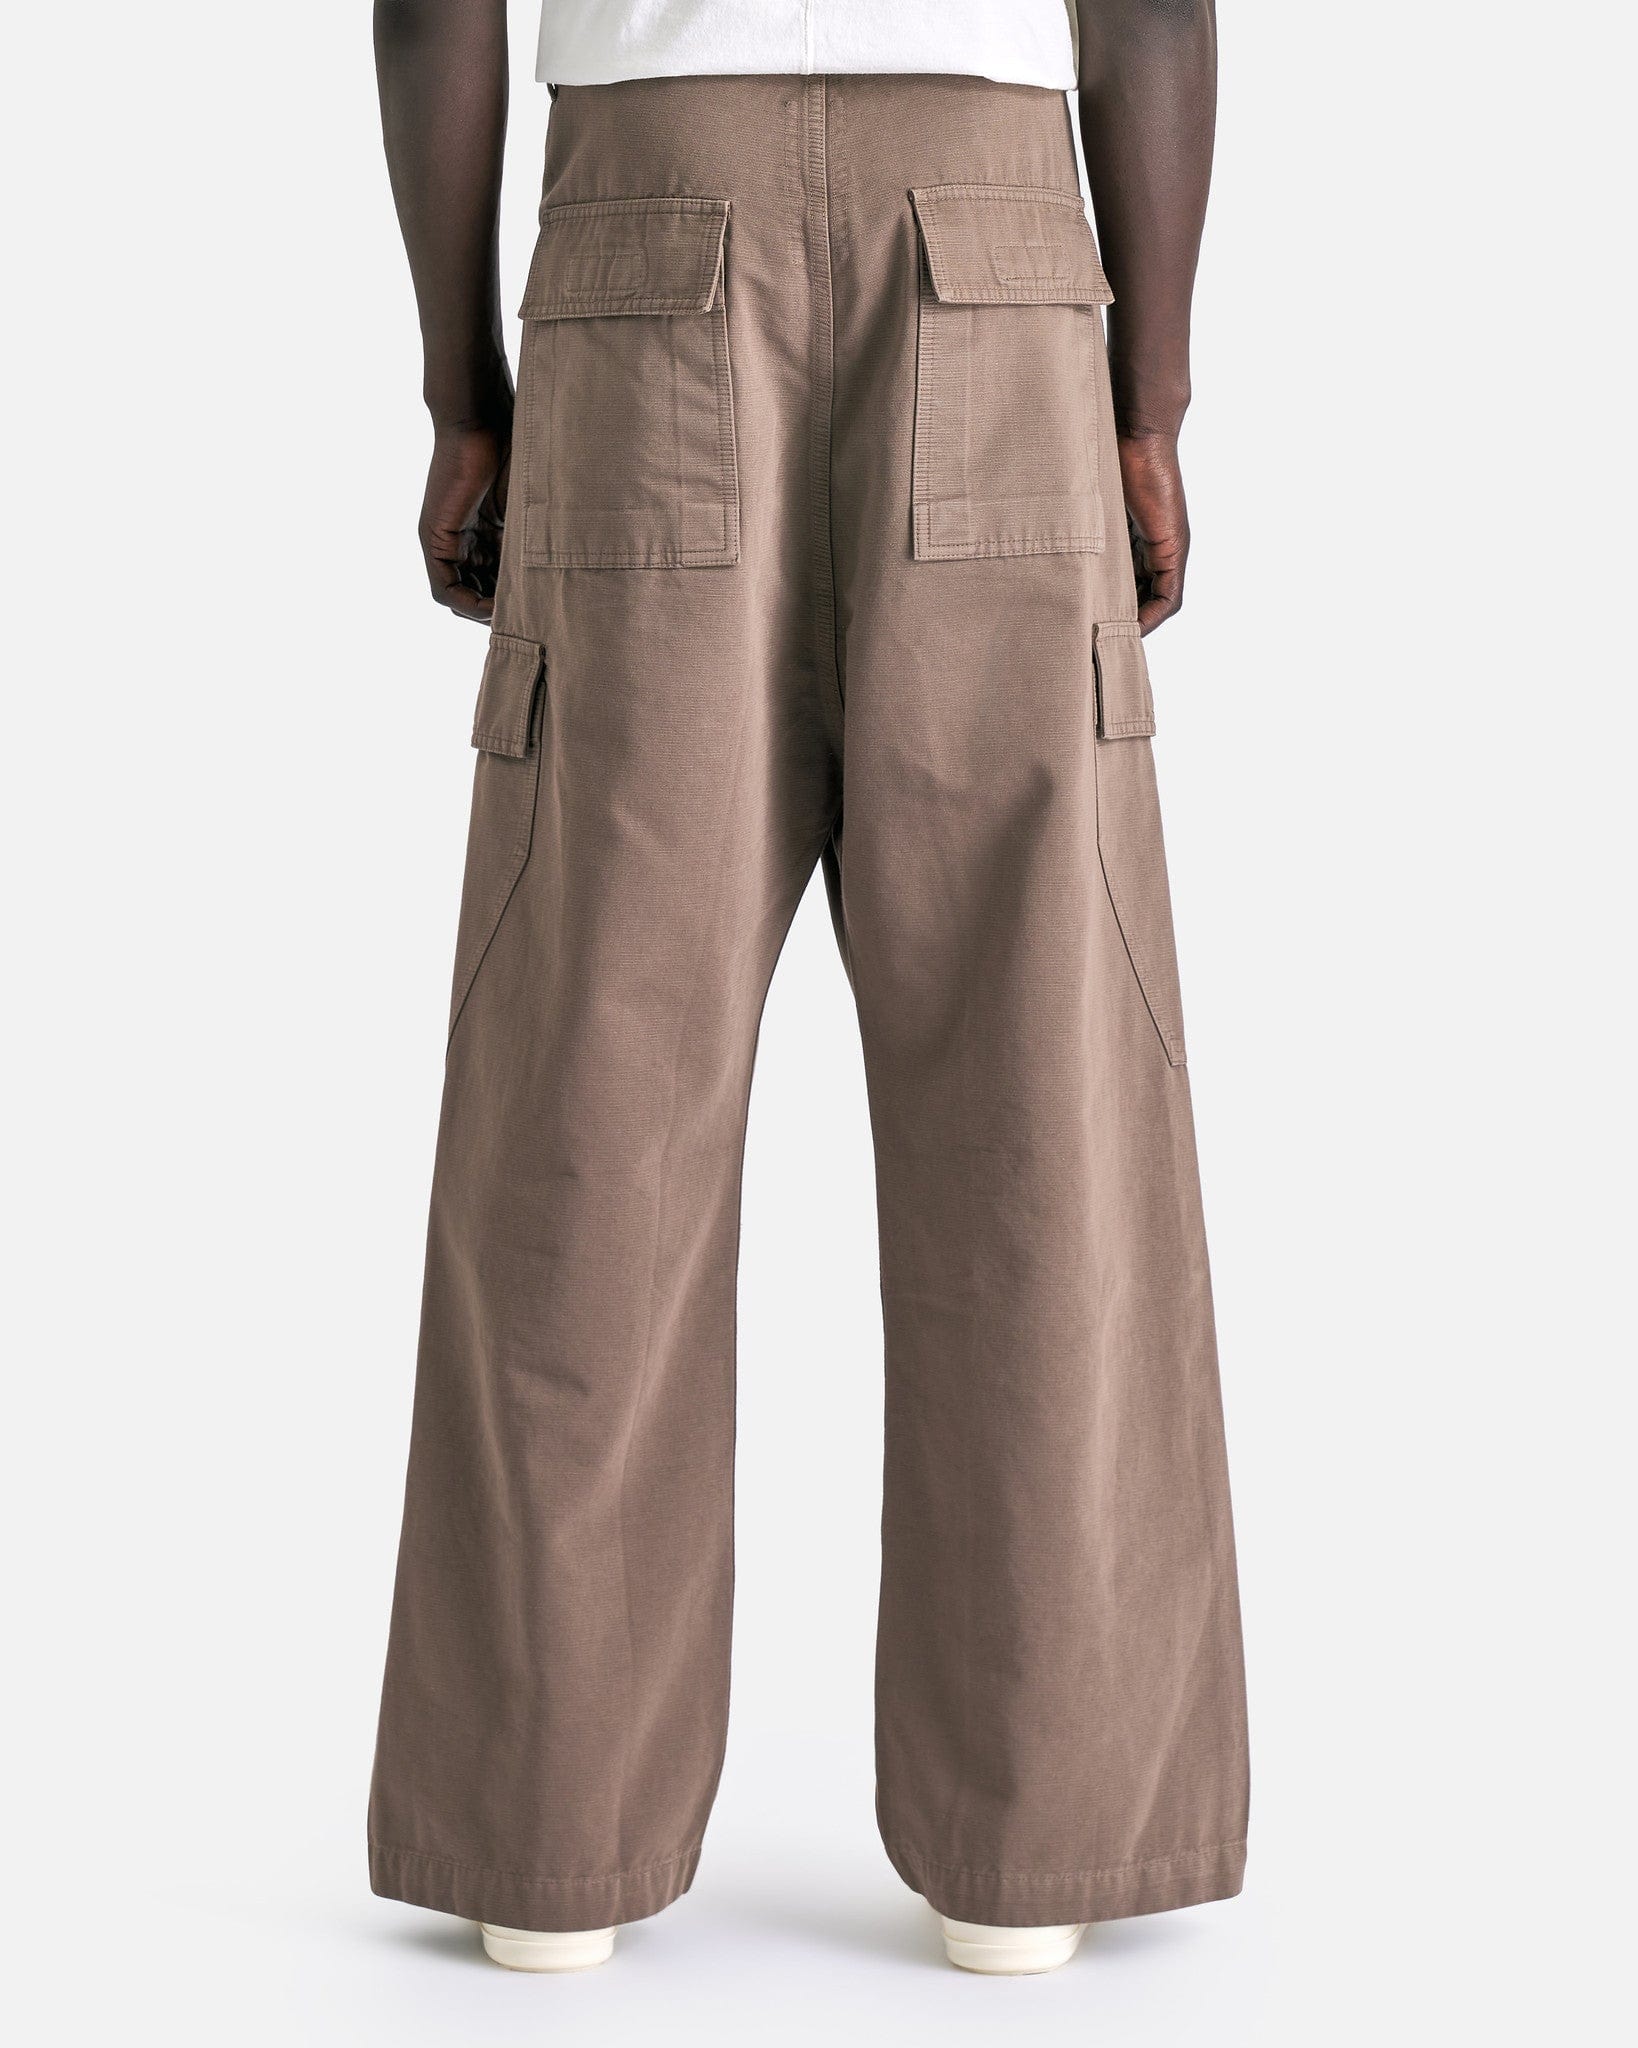 Rick Owens DRKSHDW Men's Pants Cargo Trousers in Dust